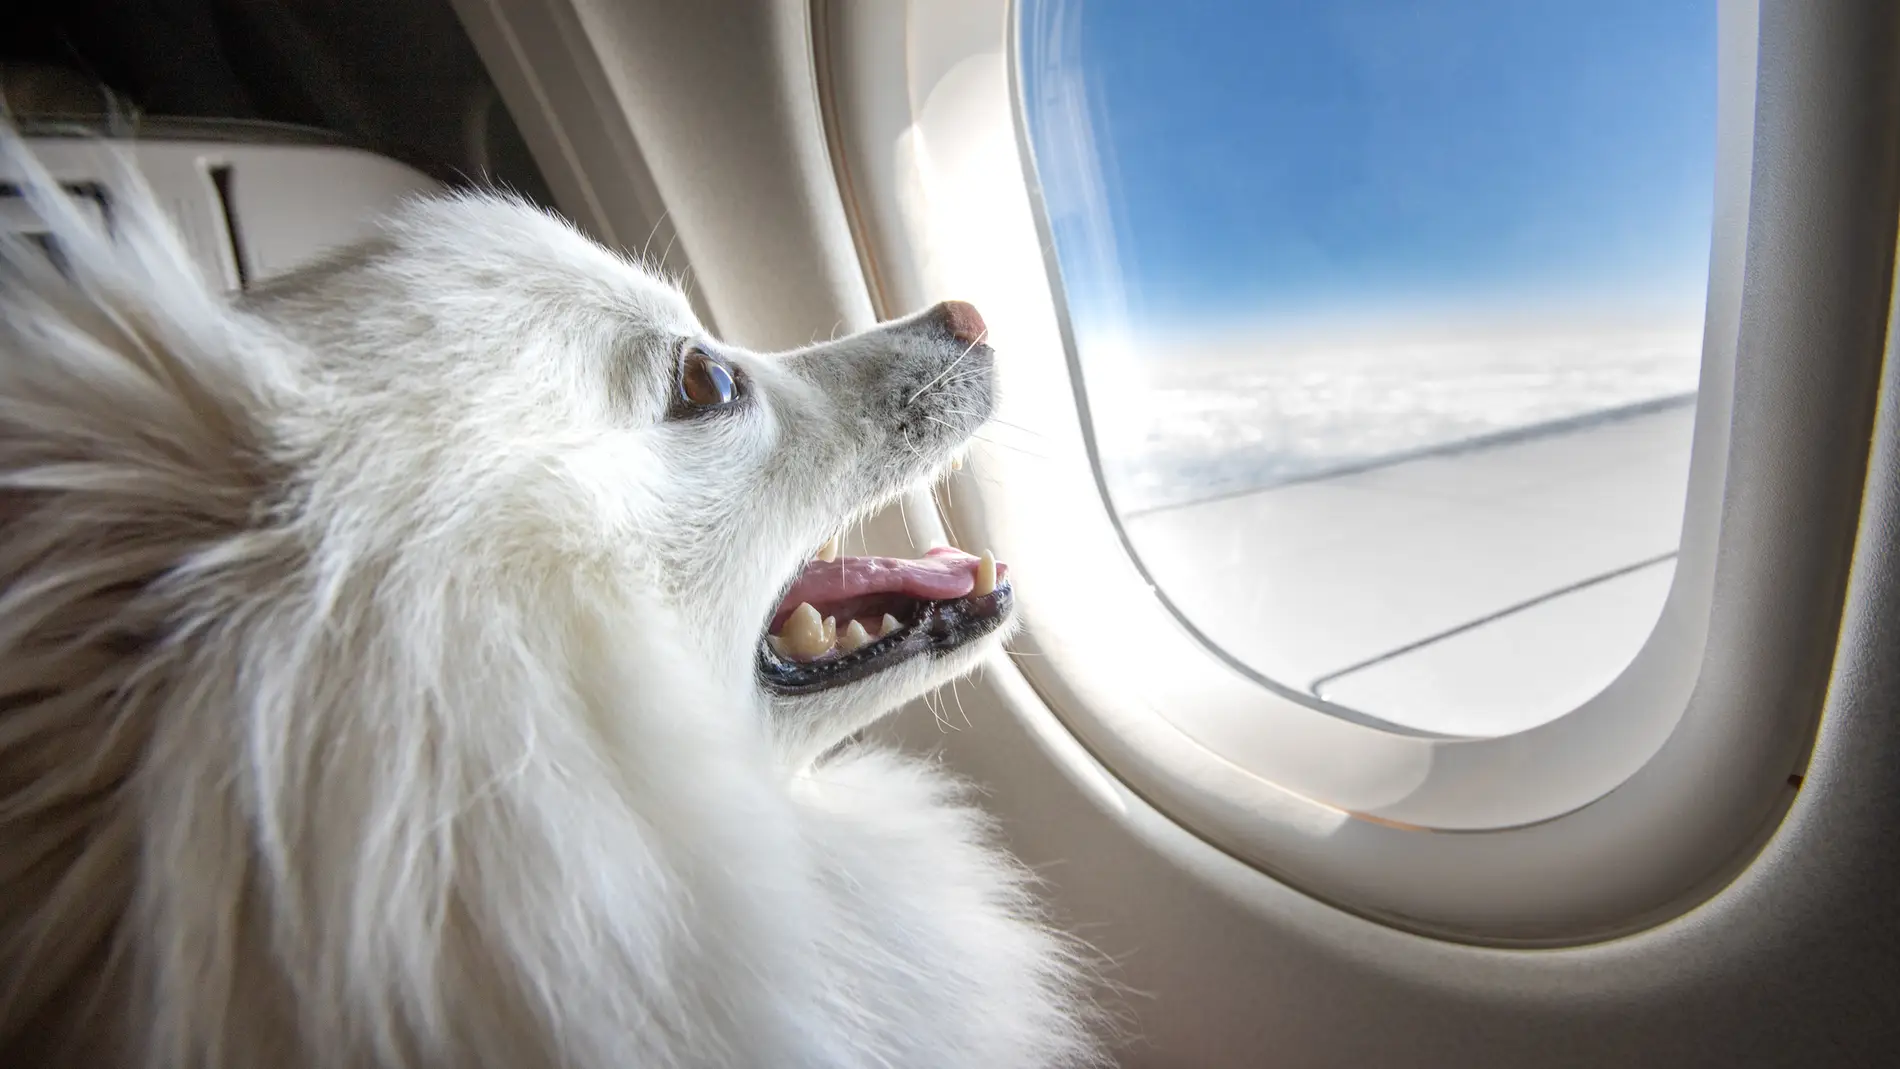 Requisitos de las aerolíneas para viajar avión con mascotas